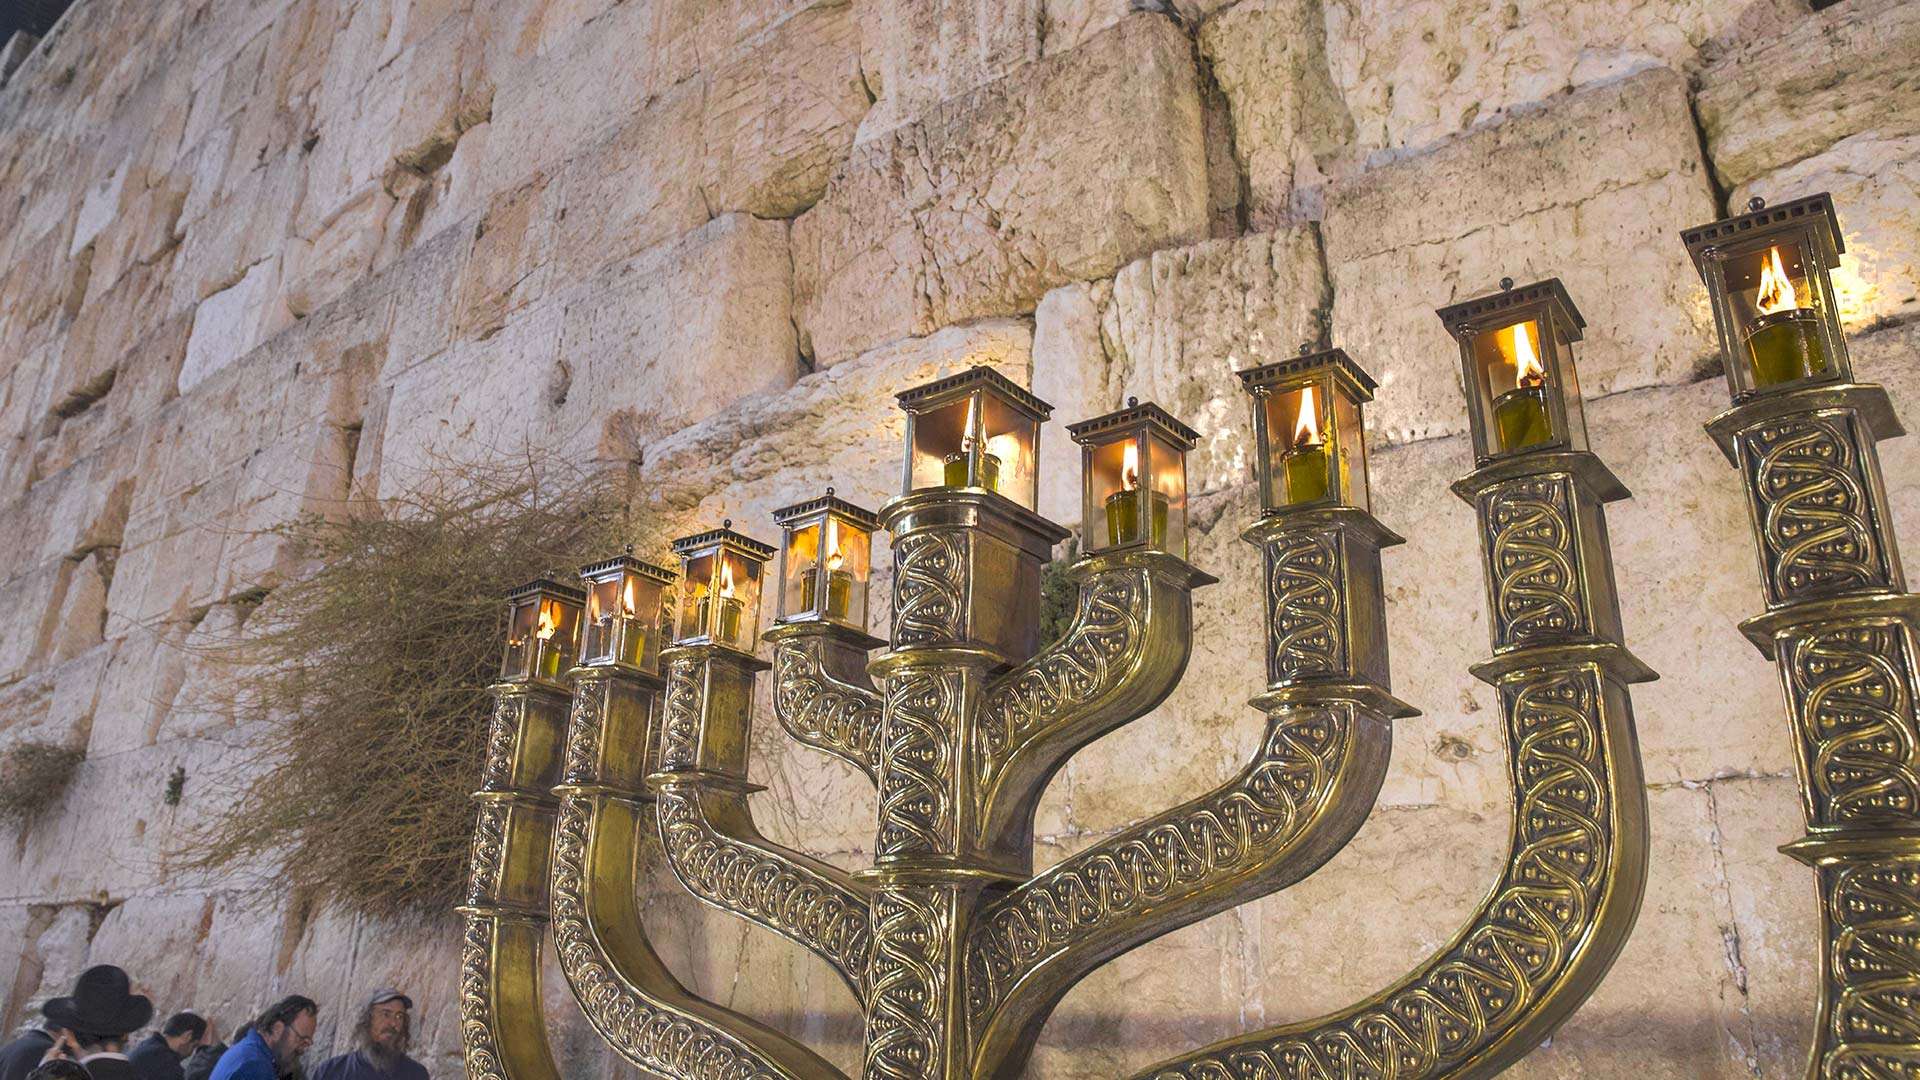 Hanukkah: A Dedication to One's Faith – The Trend